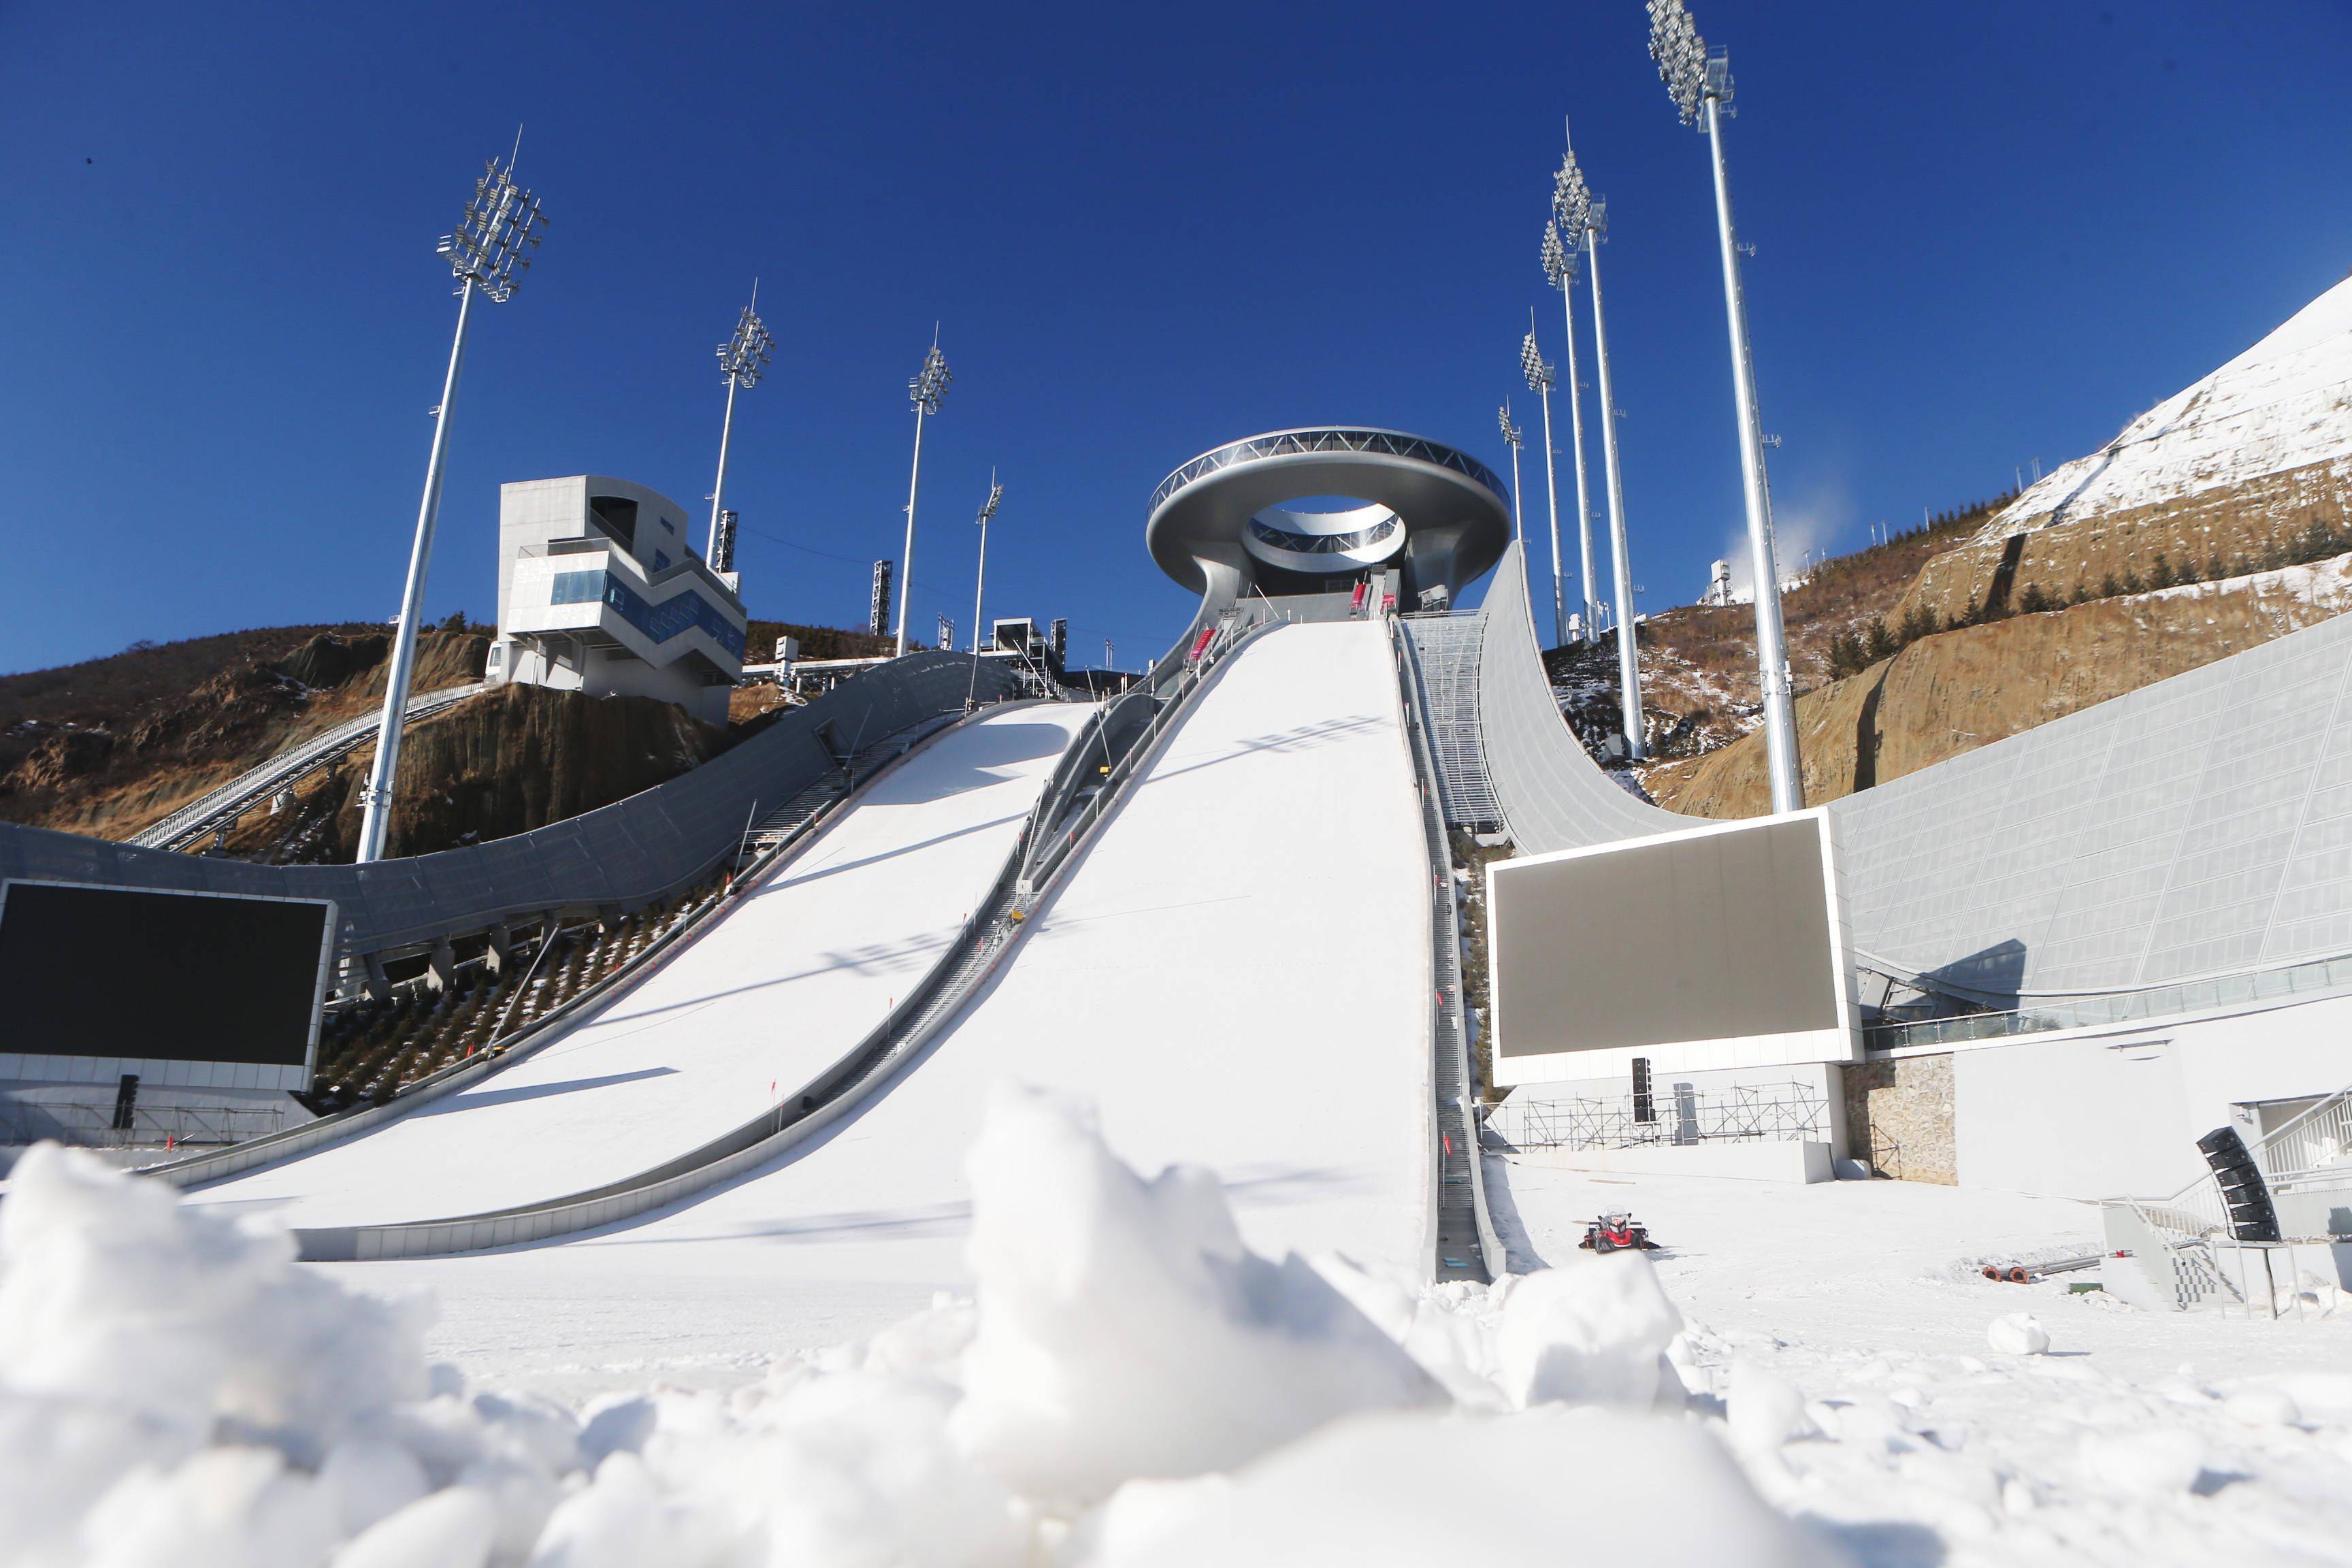 这是12月21日拍摄的国家跳台滑雪中心